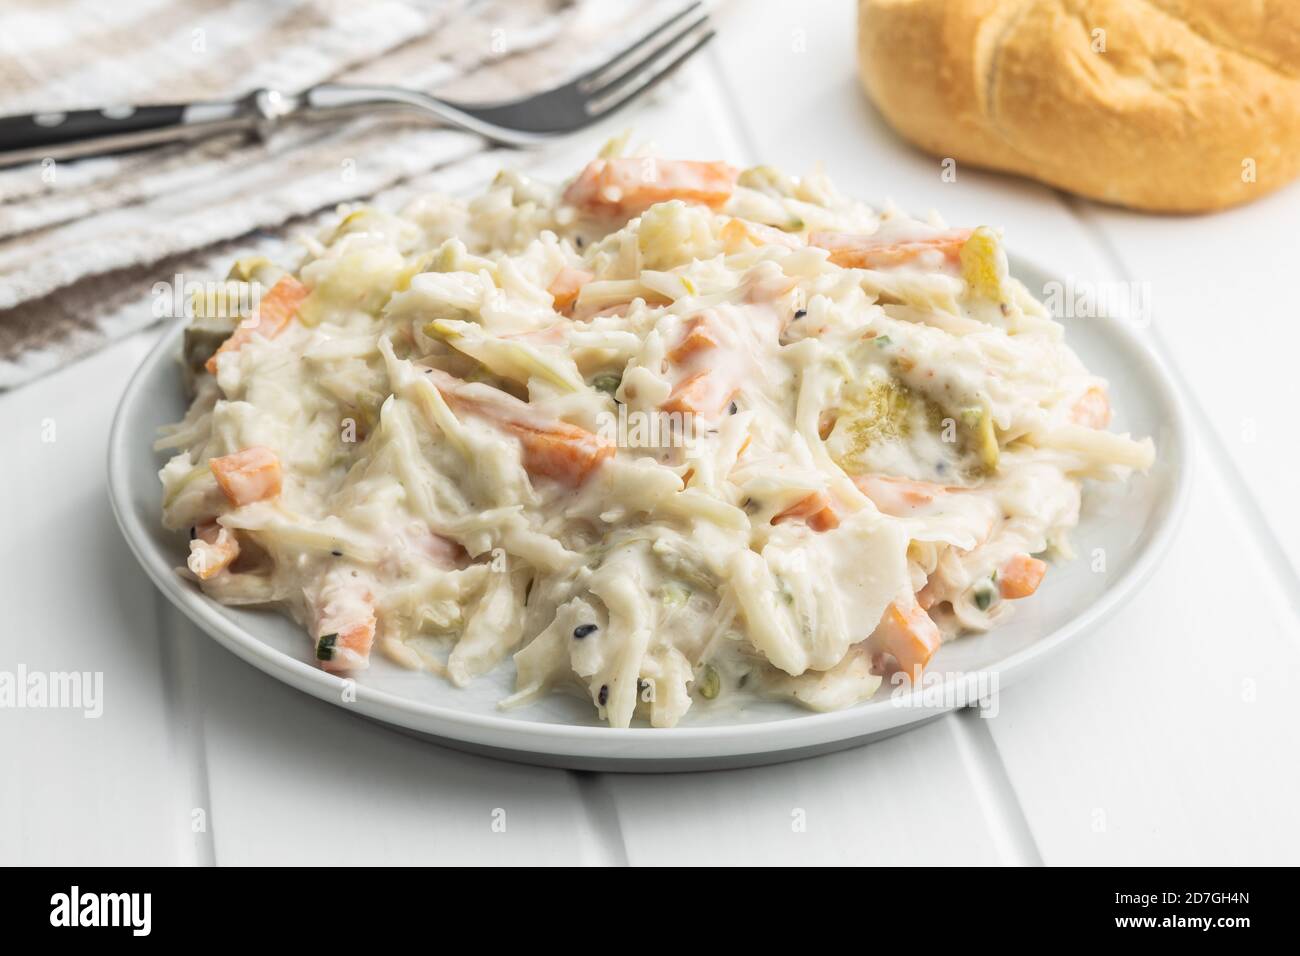 Ensalada de col. Ensalada de col blanca rizada y zanahoria rallada con mayonesa en el plato. Foto de stock